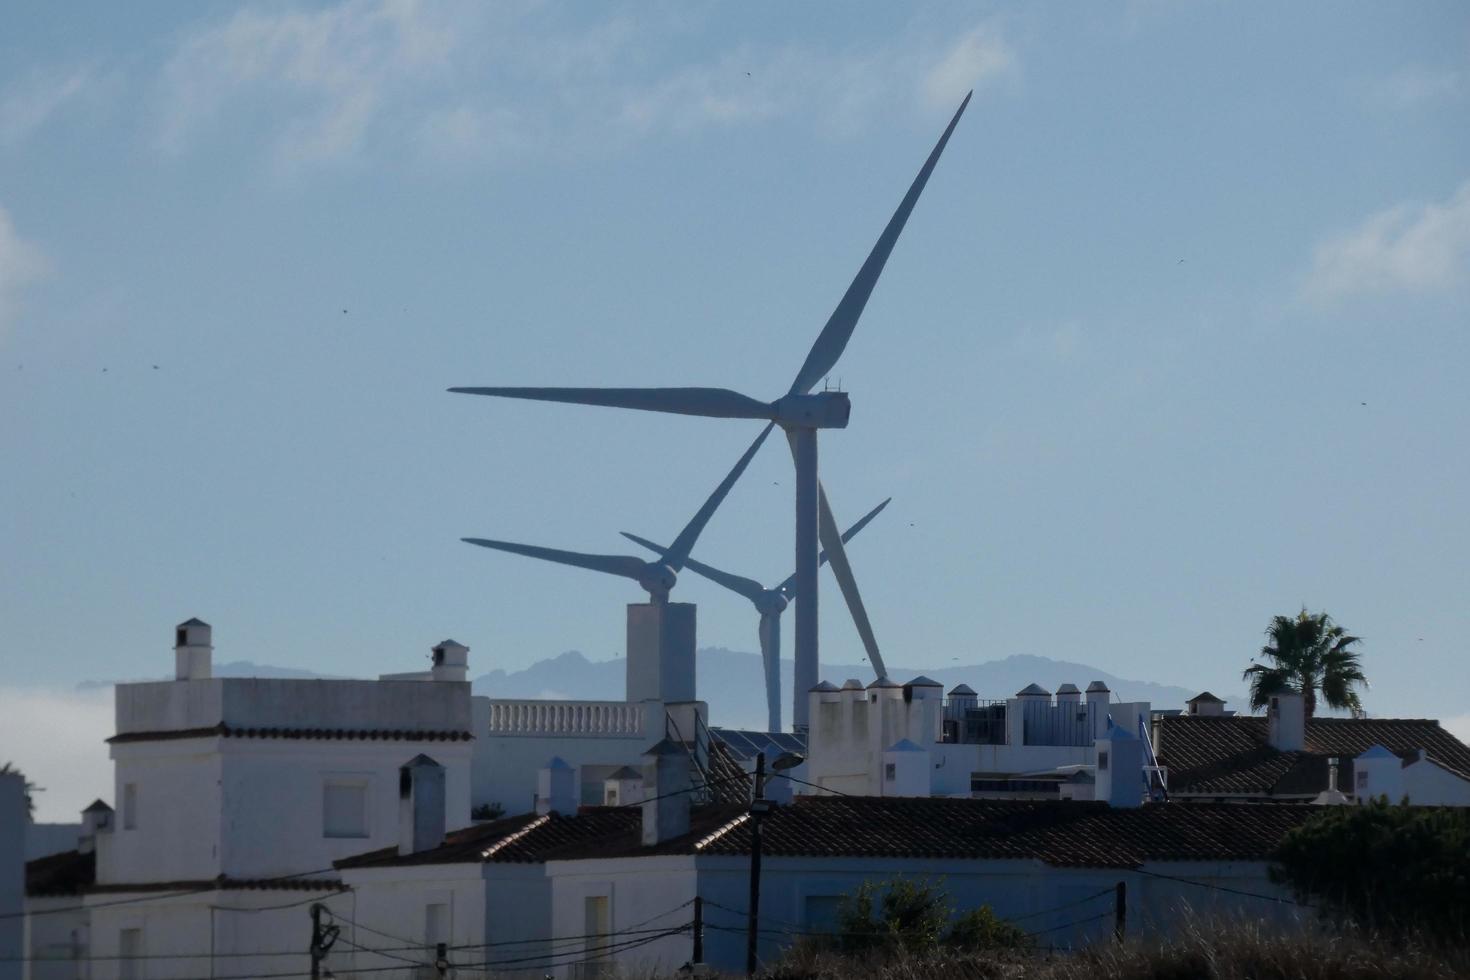 moderne Windmühlen für grüne und saubere Energieerzeugung foto